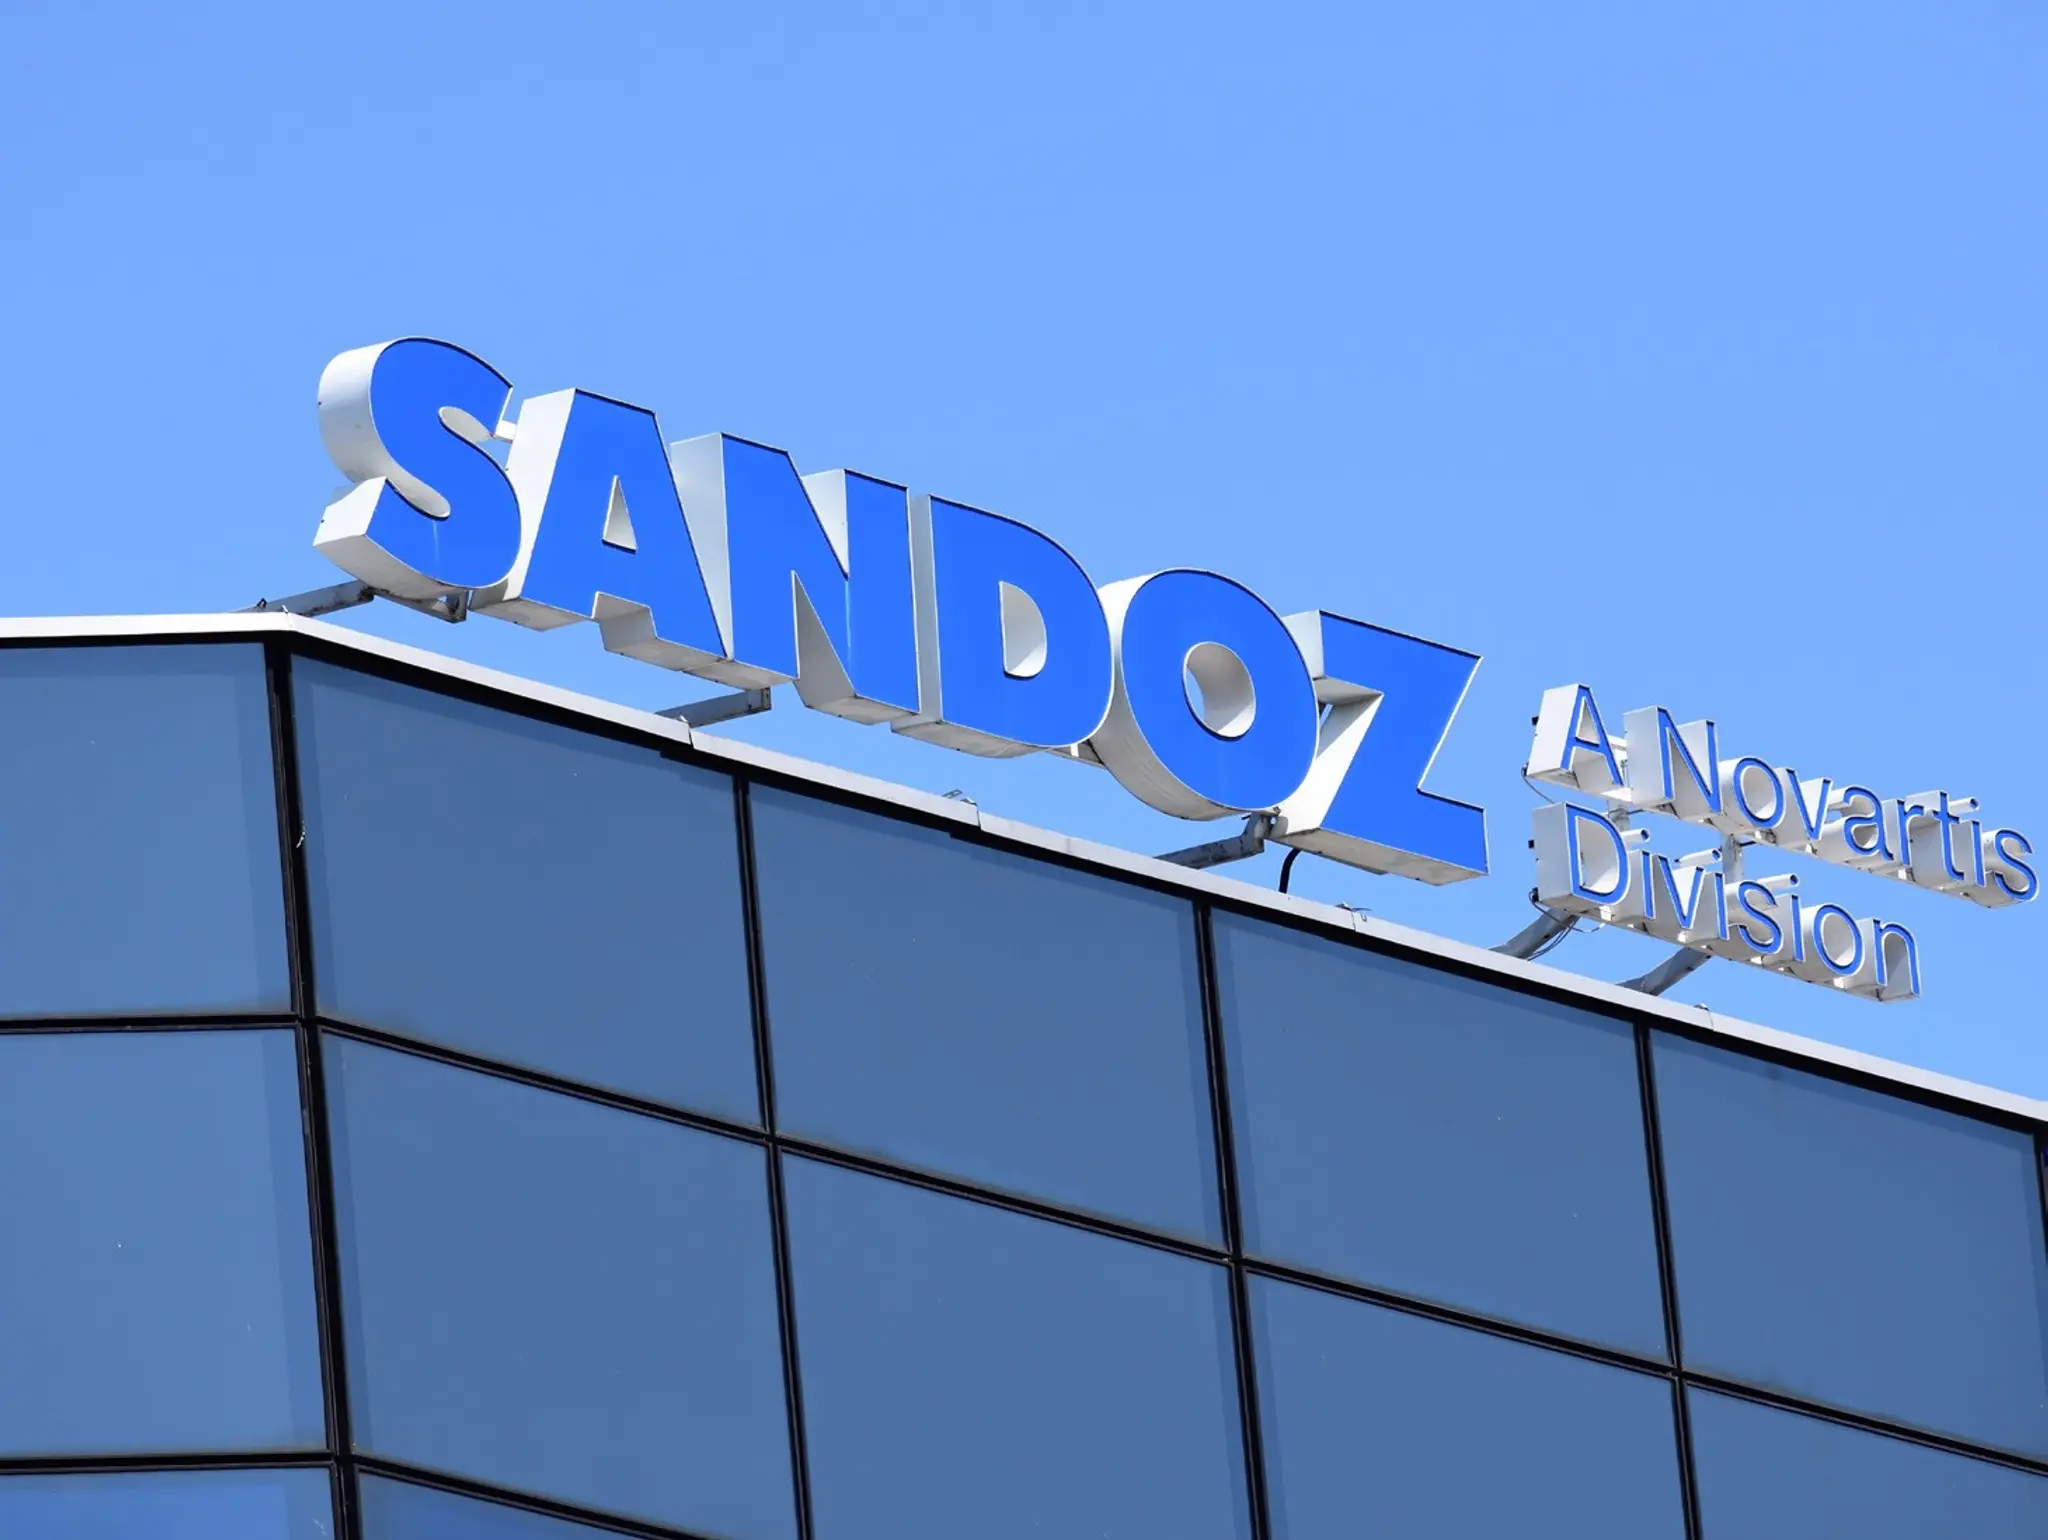 Sandoz shares exclusive deal to commercialise biosimilar ustekinumab